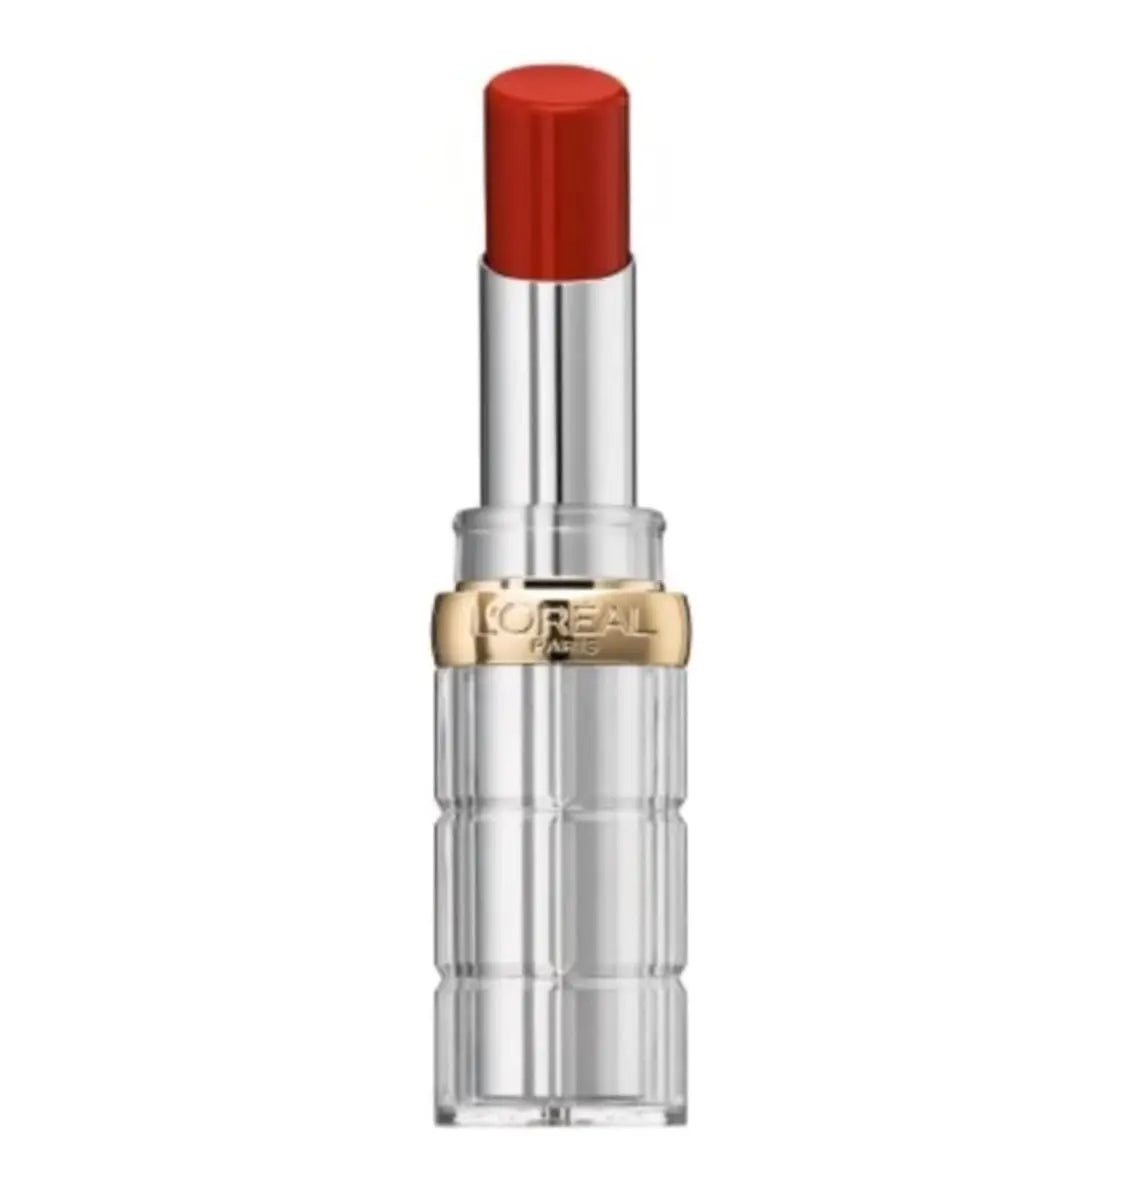 Image of L'Oreal Color Riche Lipstick Shine - 350 Insanesation